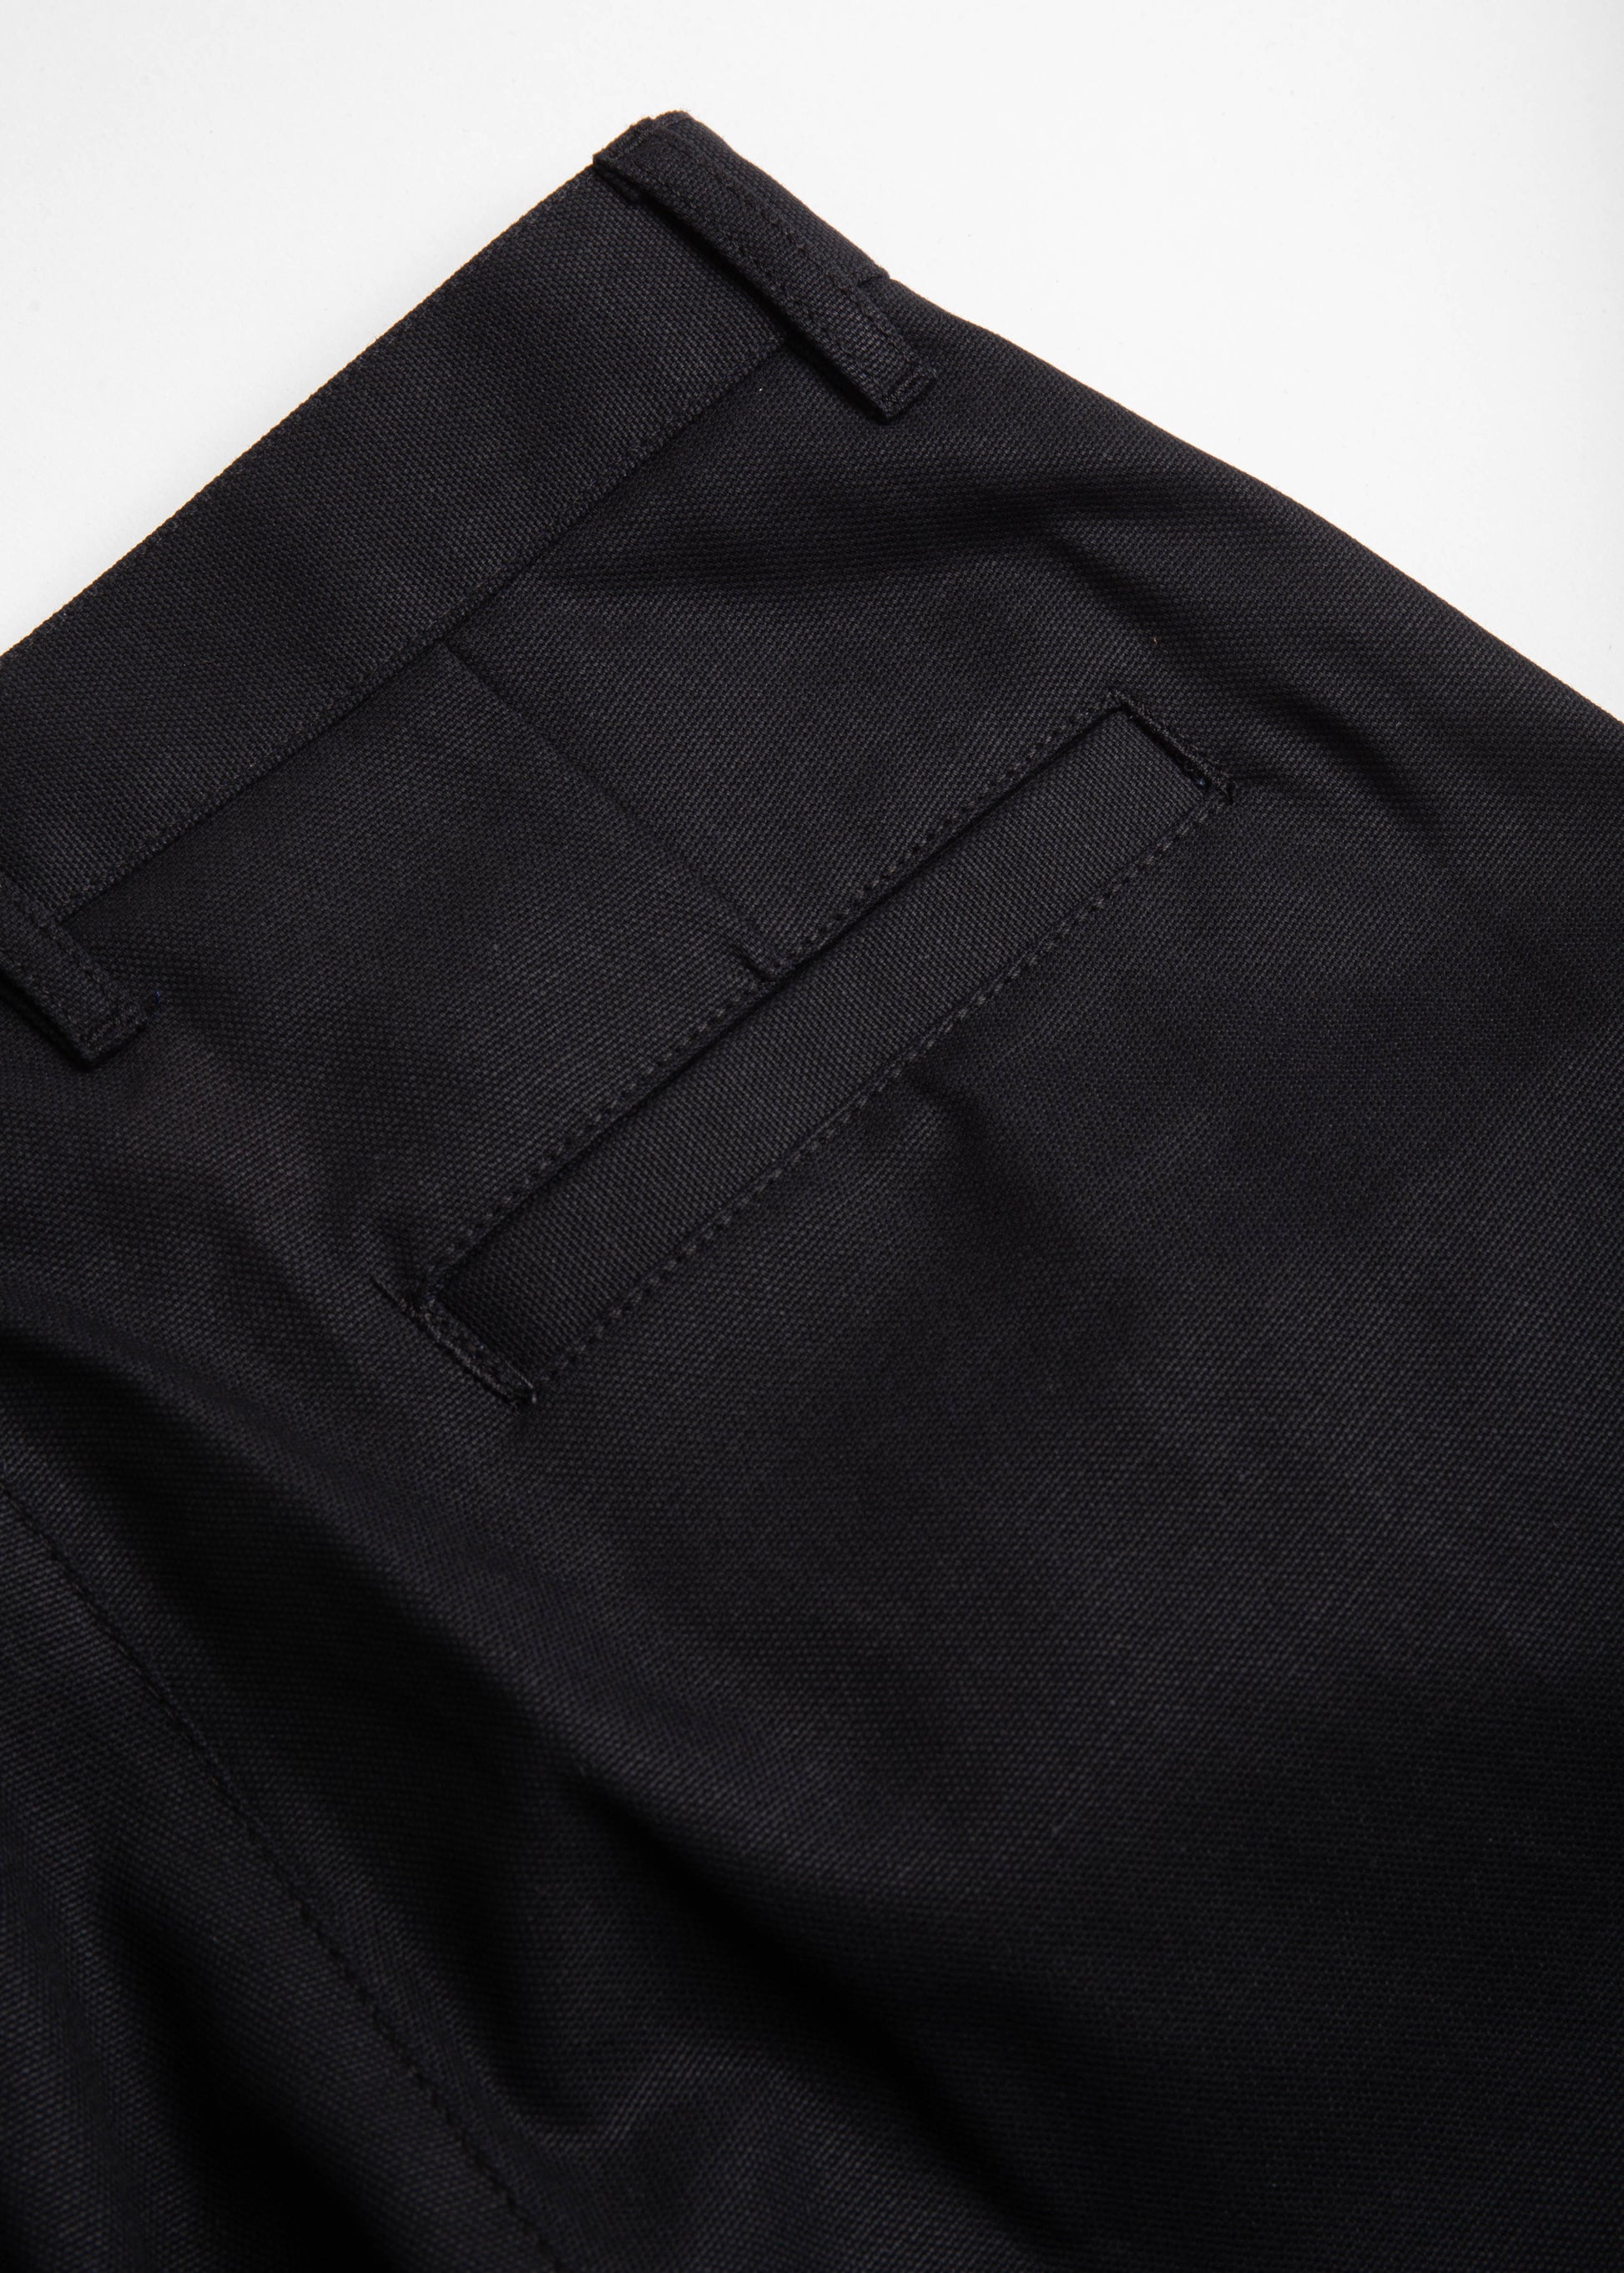 close up of danver pant color black back pocket